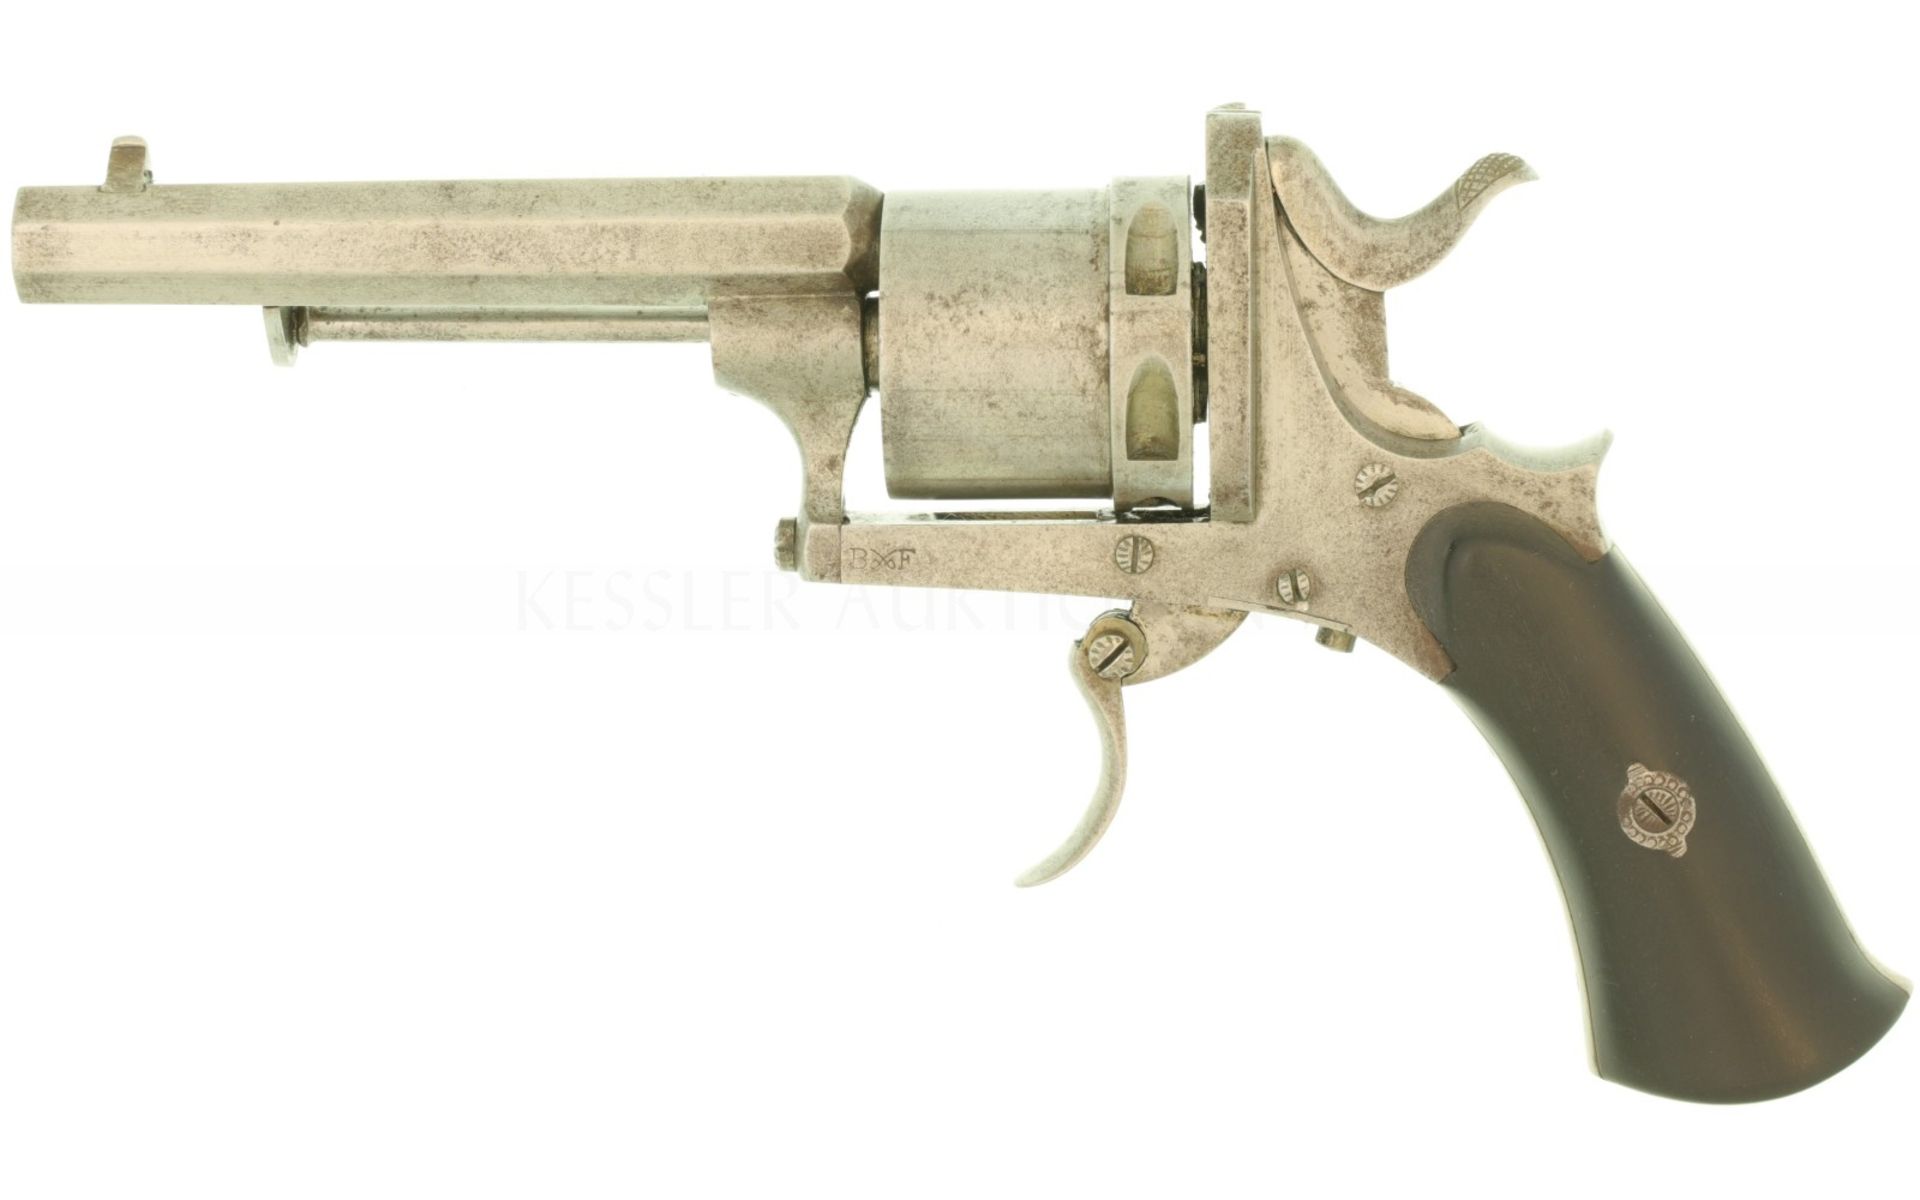 Revolver, belgisch, sign. "Knecht in St. Gallen", Kal. 7mmRF